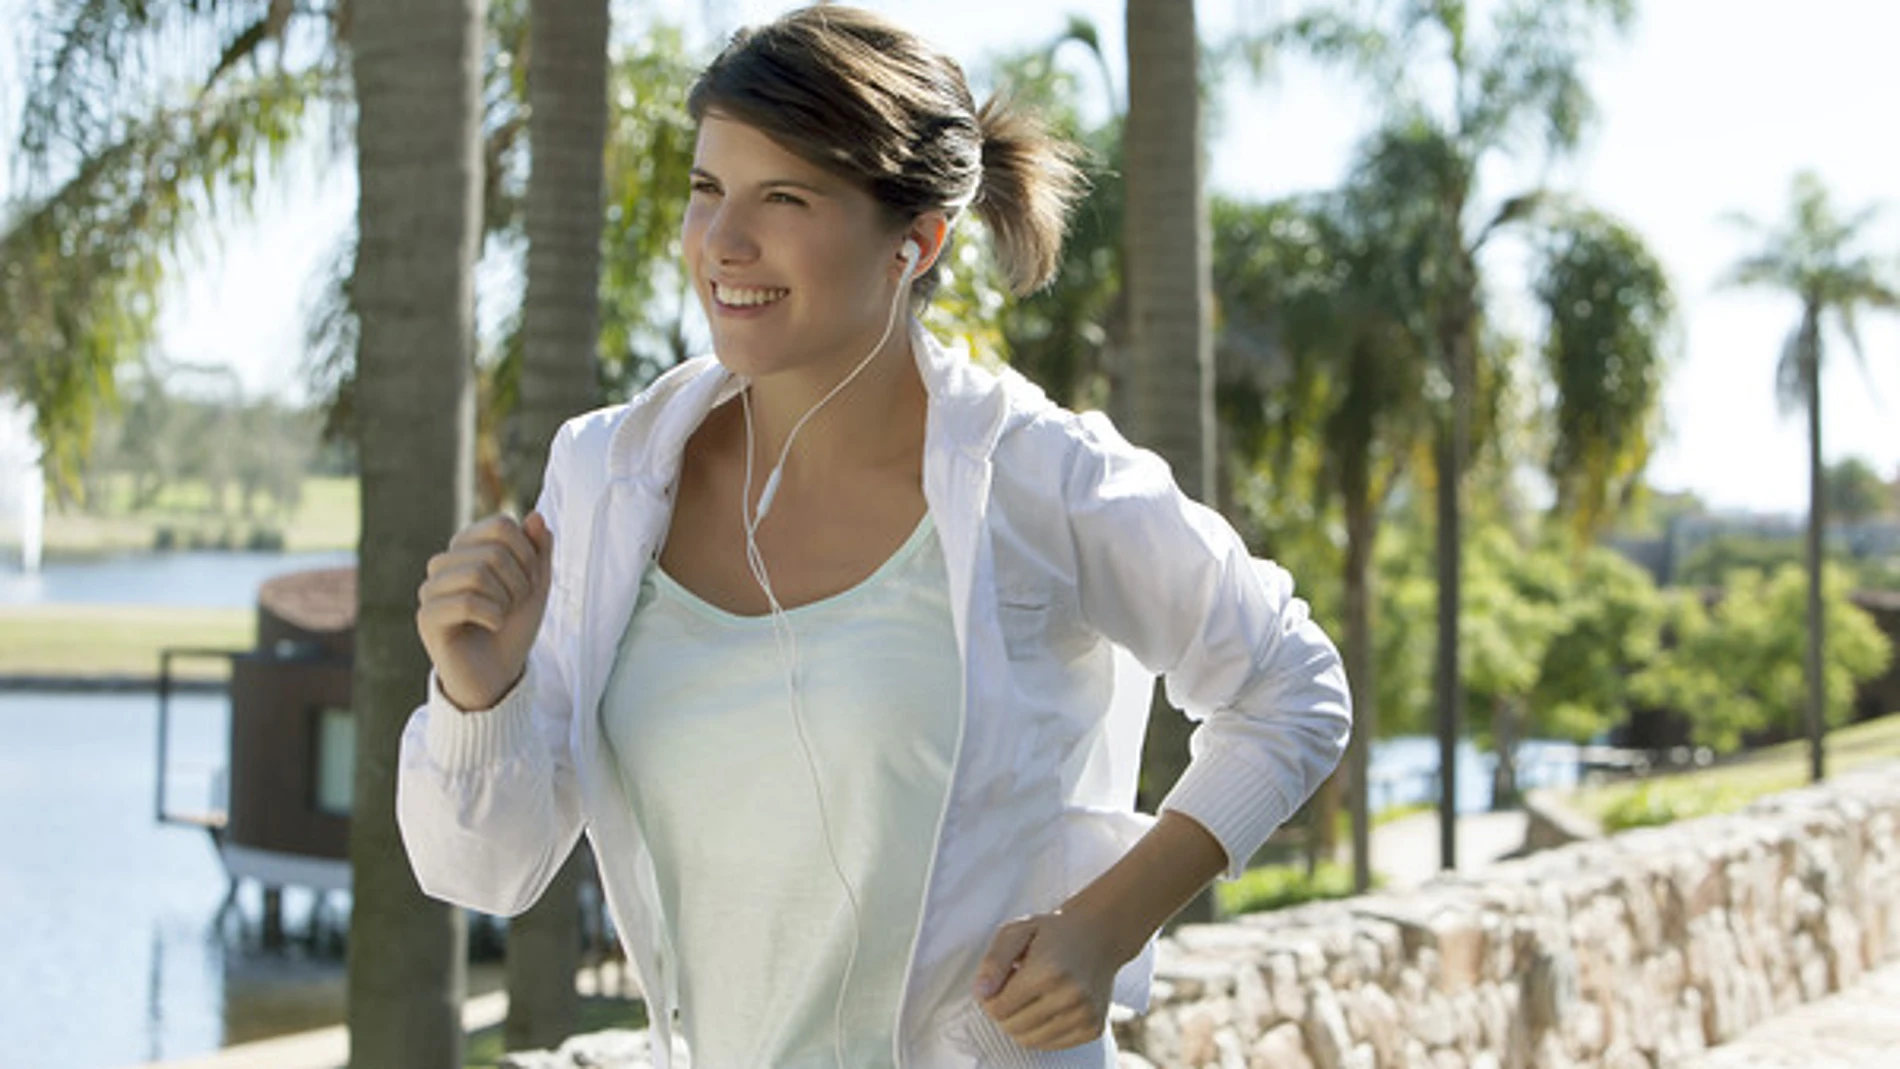 Practicar deporte con tendinitis reduce el dolor y facilita la vuelta a la rutina